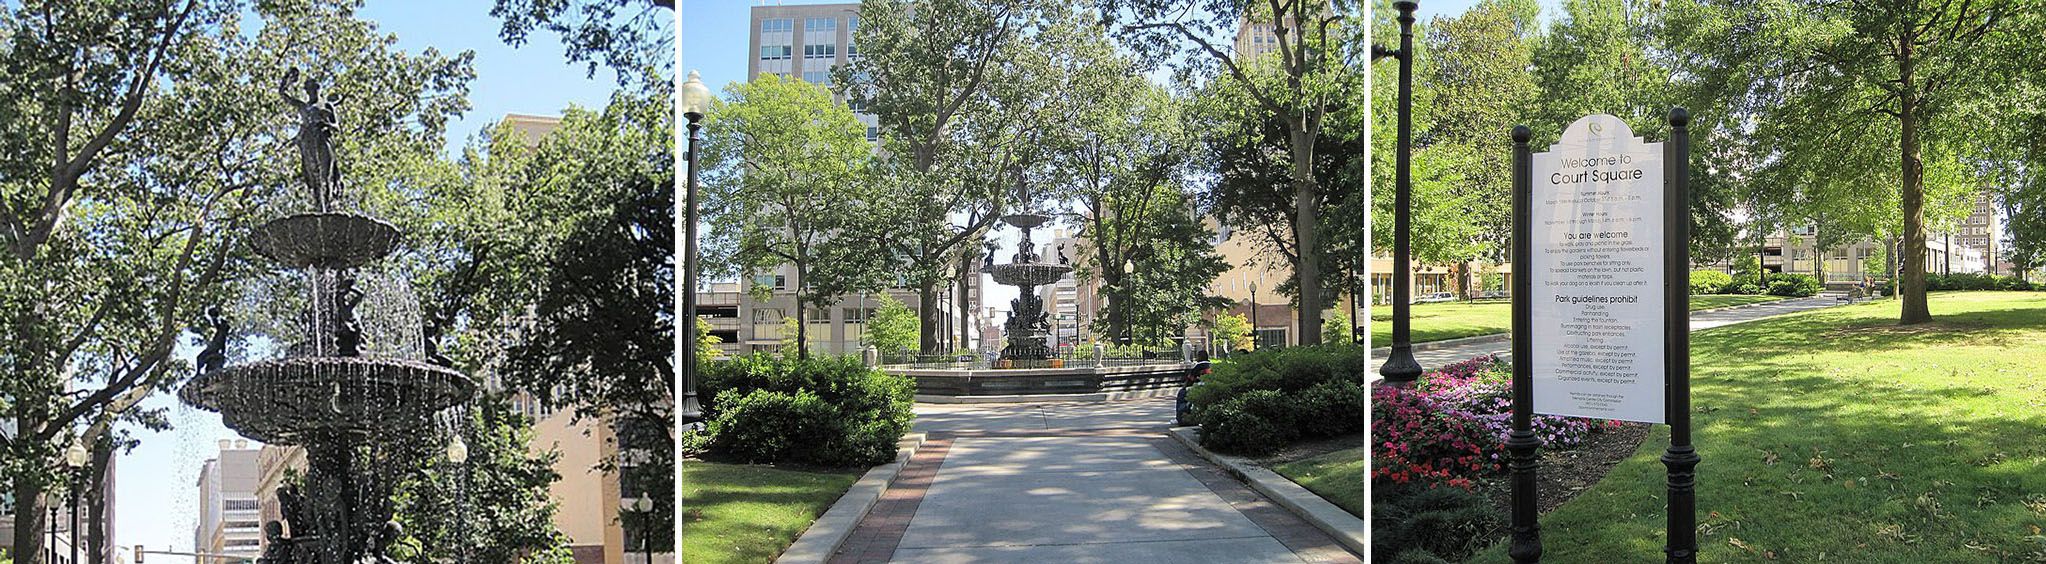 Historic Court Square Fountain